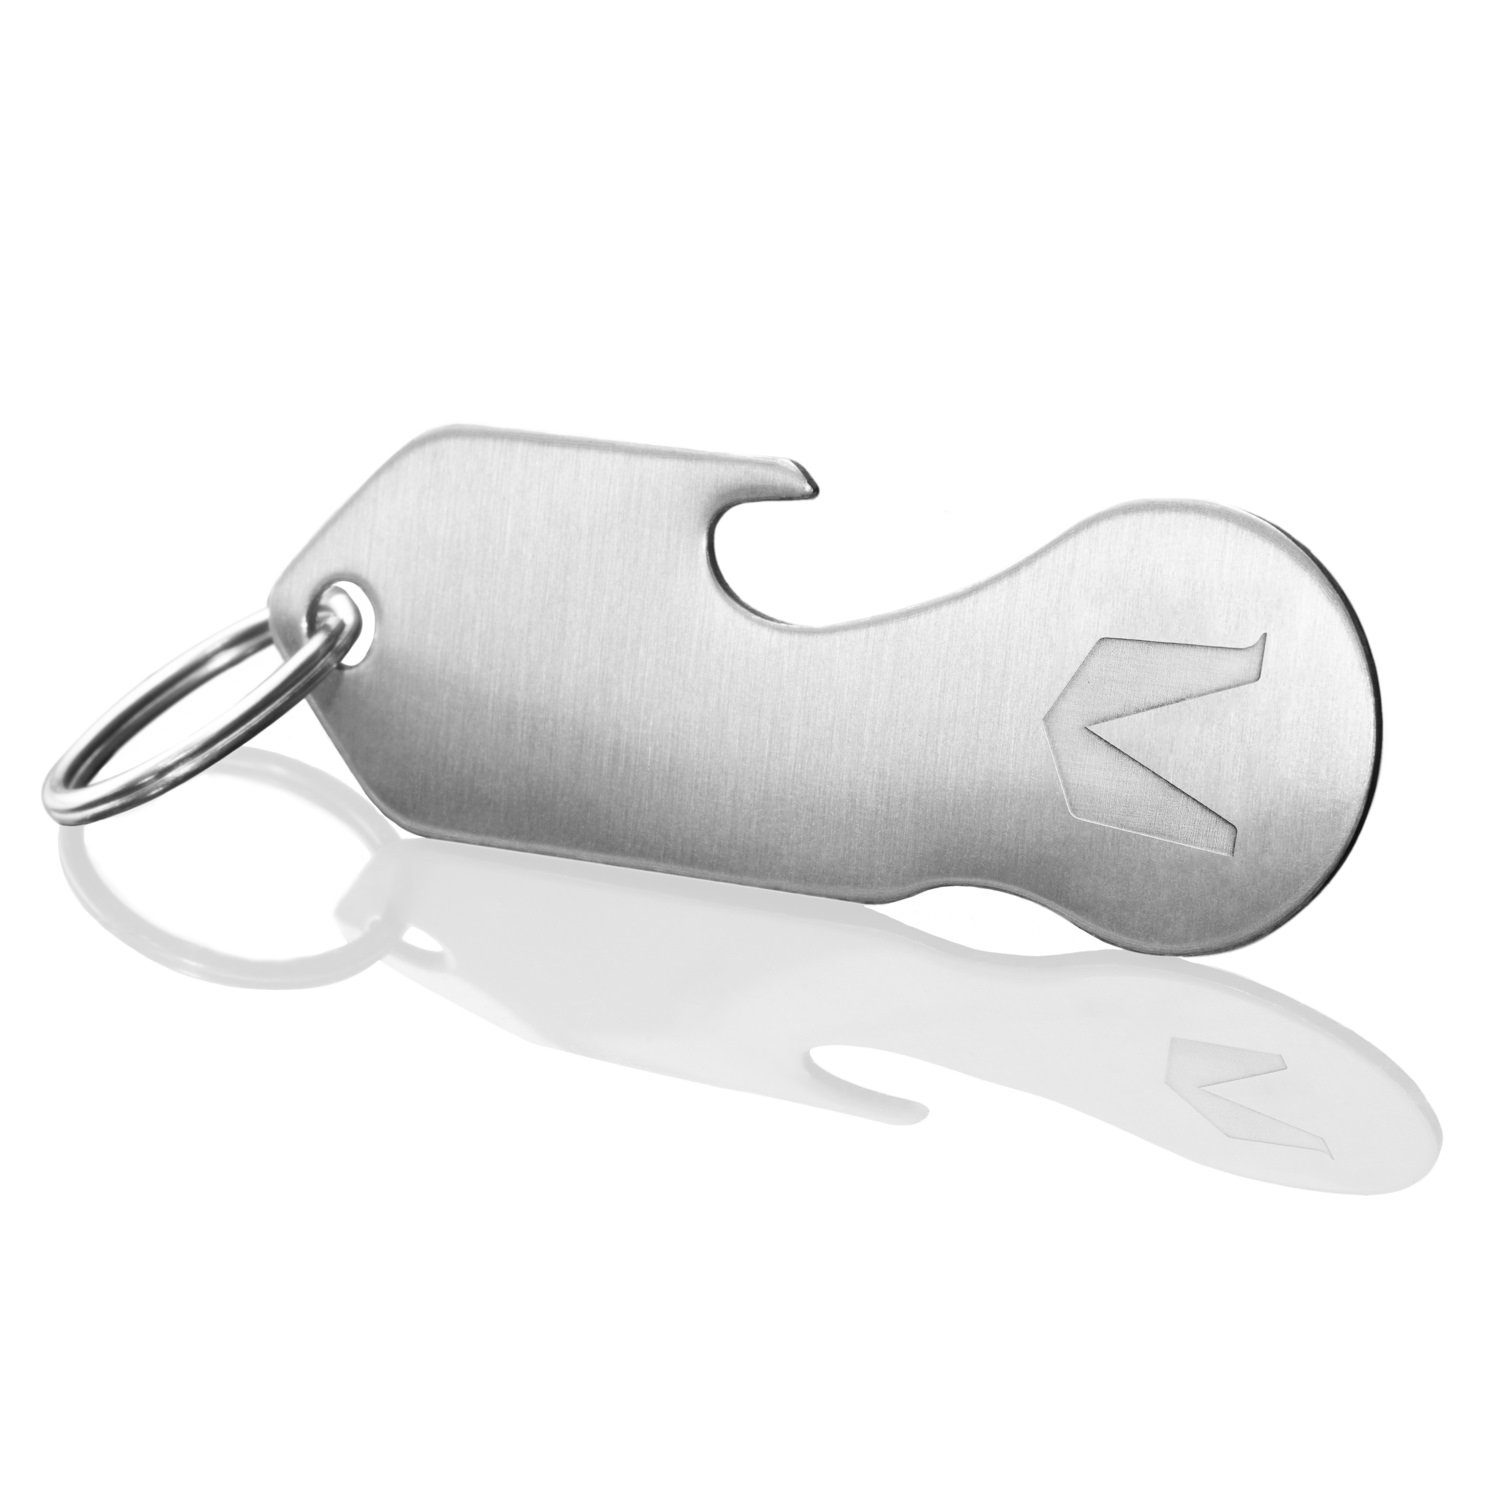 Platz Schlüsseltasche MAGATI Beige mit Schlüsselanhänger aus Einkaufswagenlöser, für 1-6 Schlüssel, Nero Occhio Leder